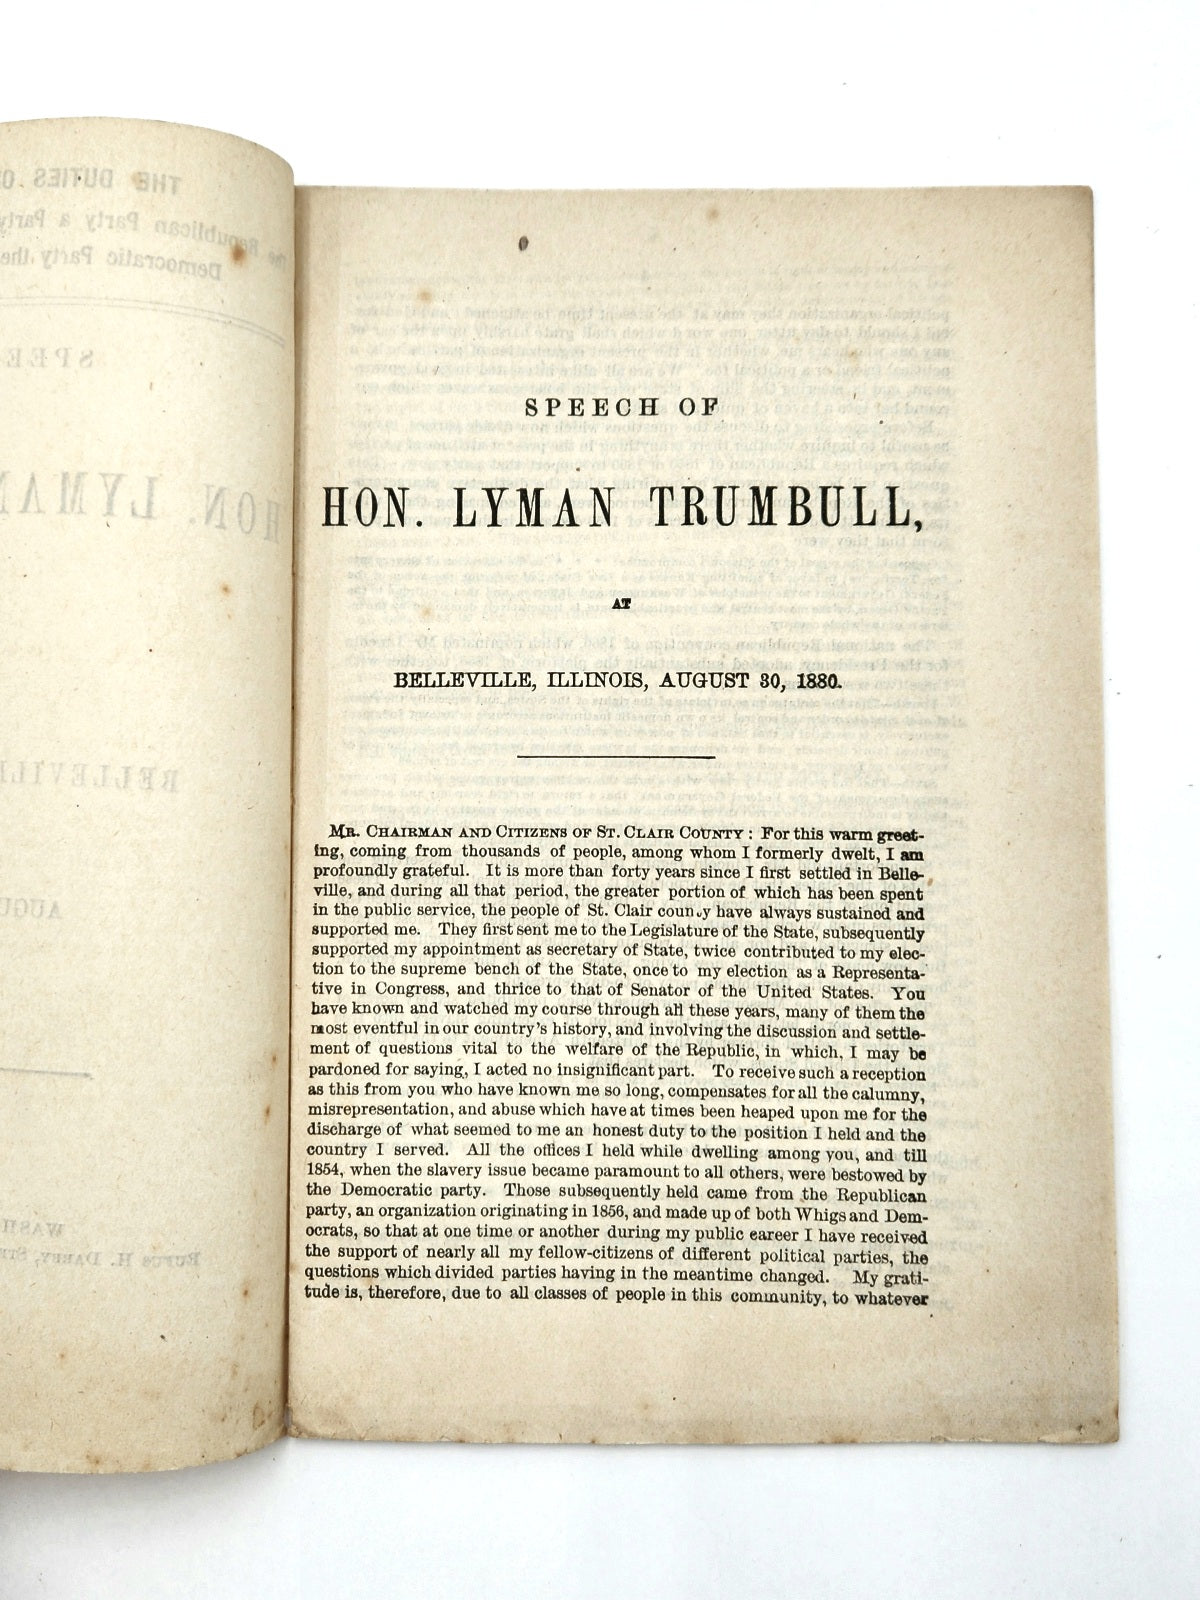 Speech of Lyman Trumball - Belleville, Illinois - August 30, 1880